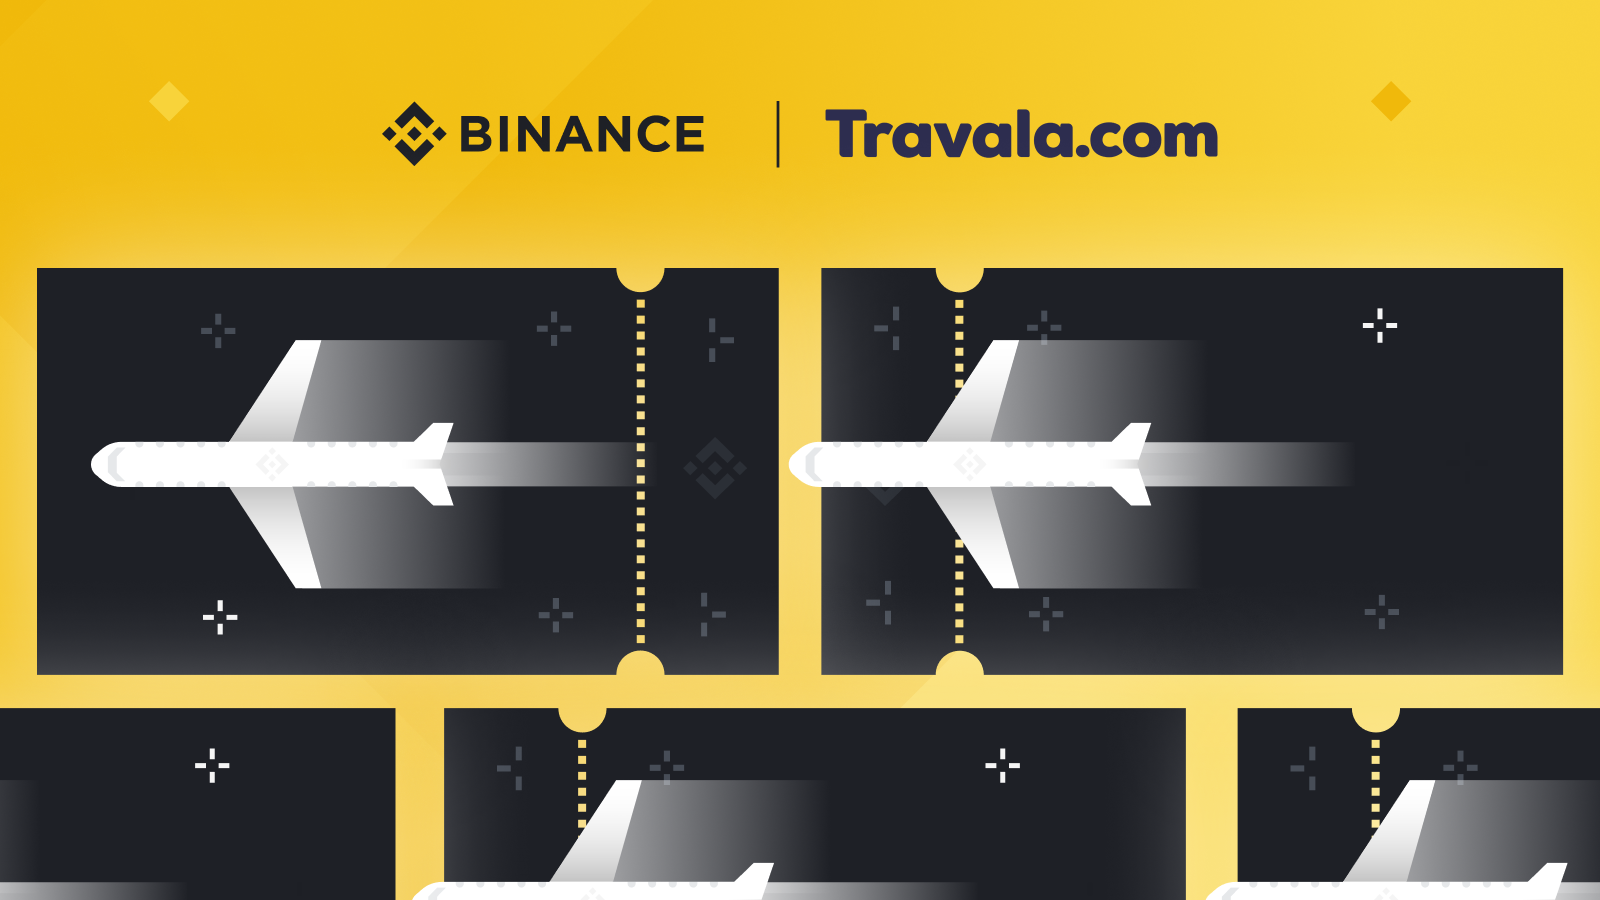 Travala.com: Bringing Crypto Mainstream Through the Travel ...